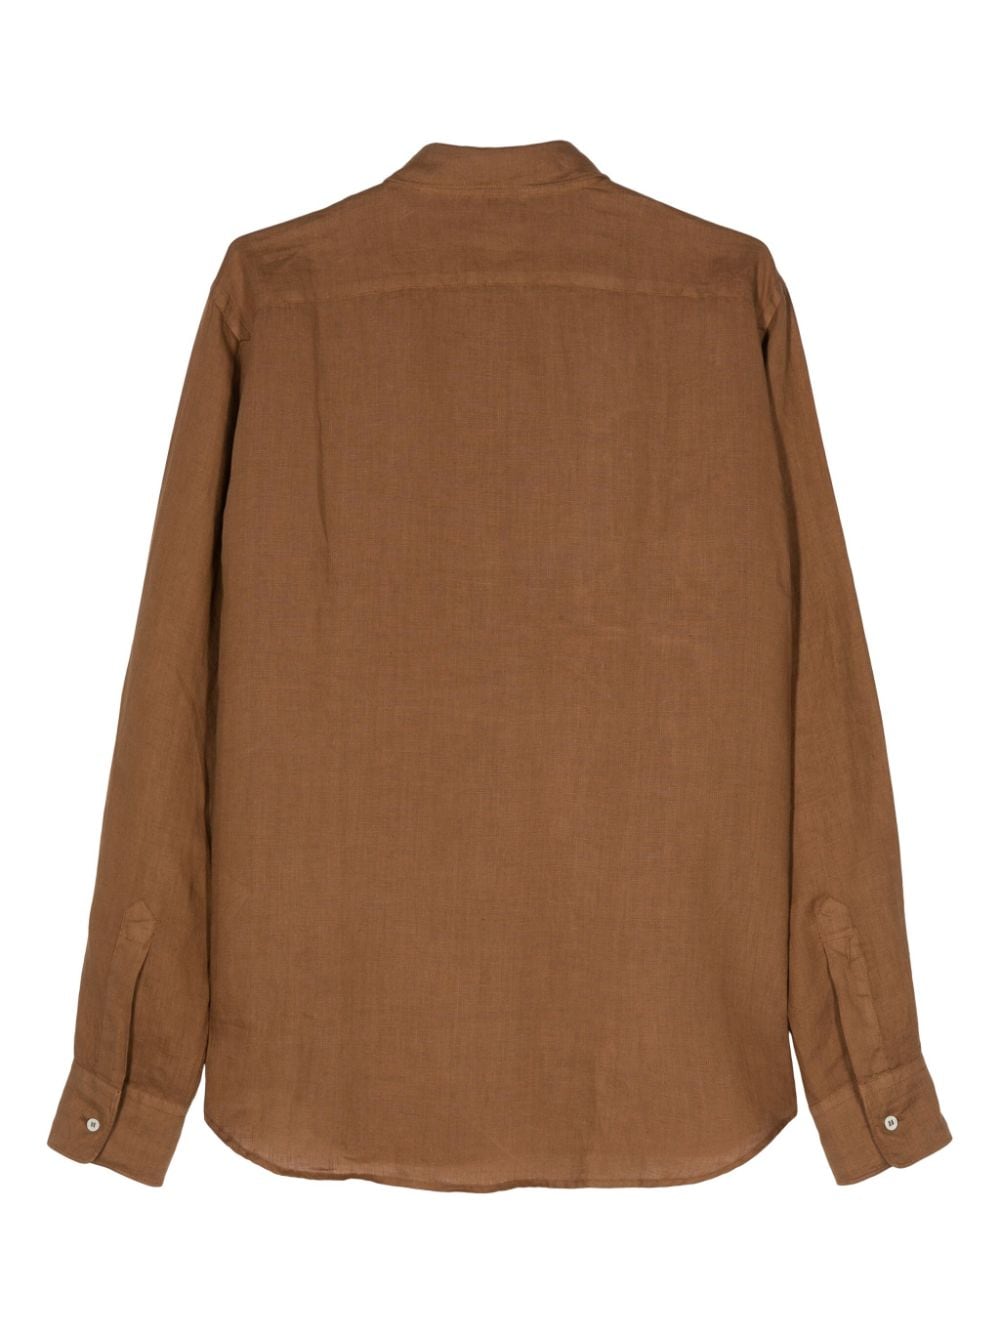 ASPESI long-sleeve linen shirt - Bruin